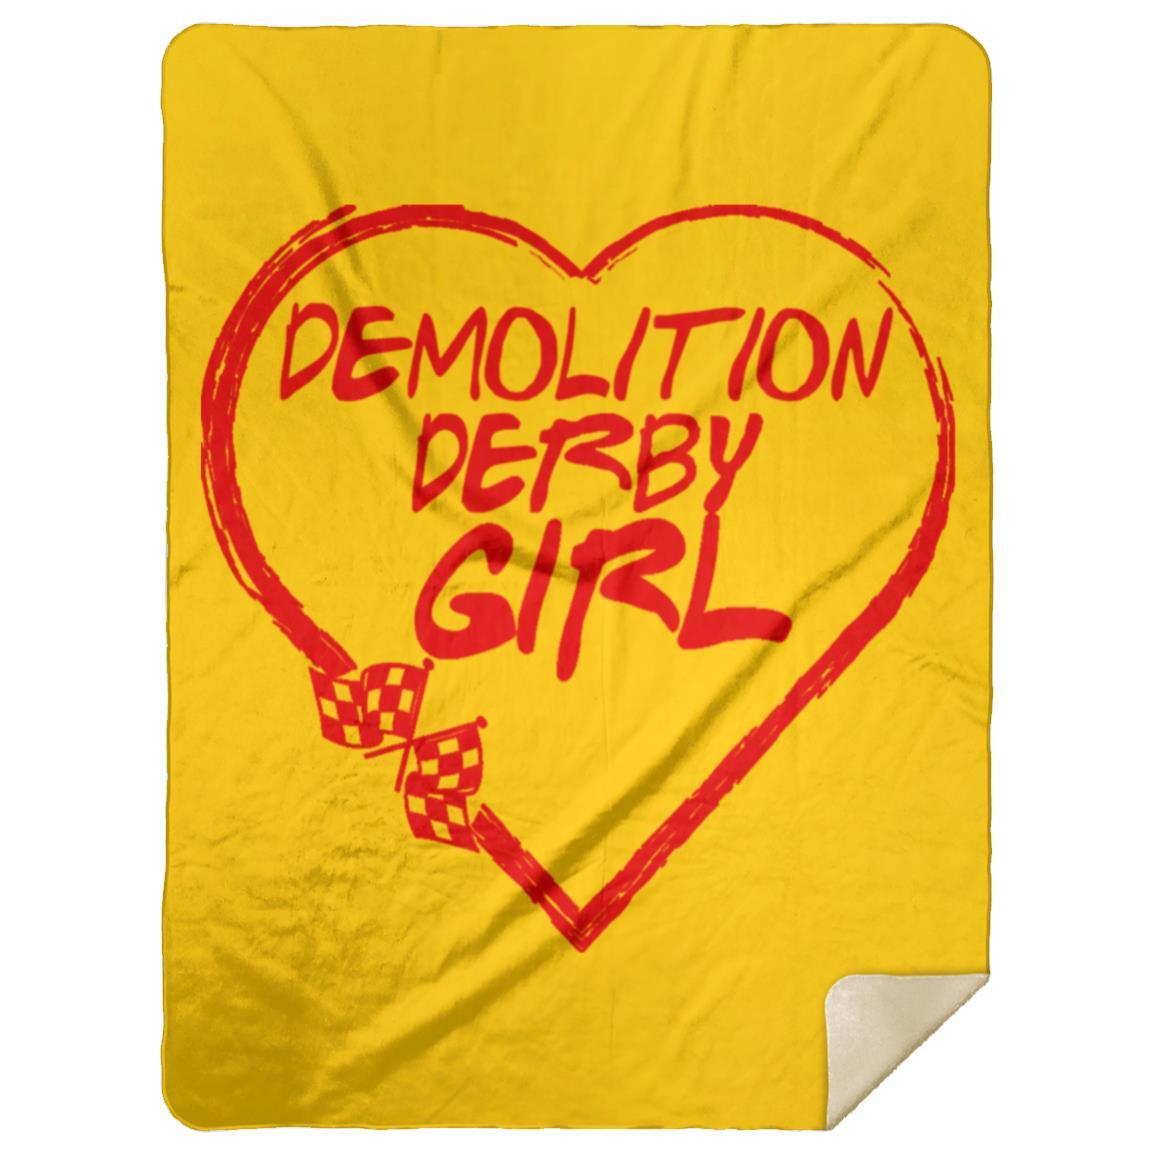 Demolition Derby Girl Heart Premium Mink Sherpa Blanket 60x80